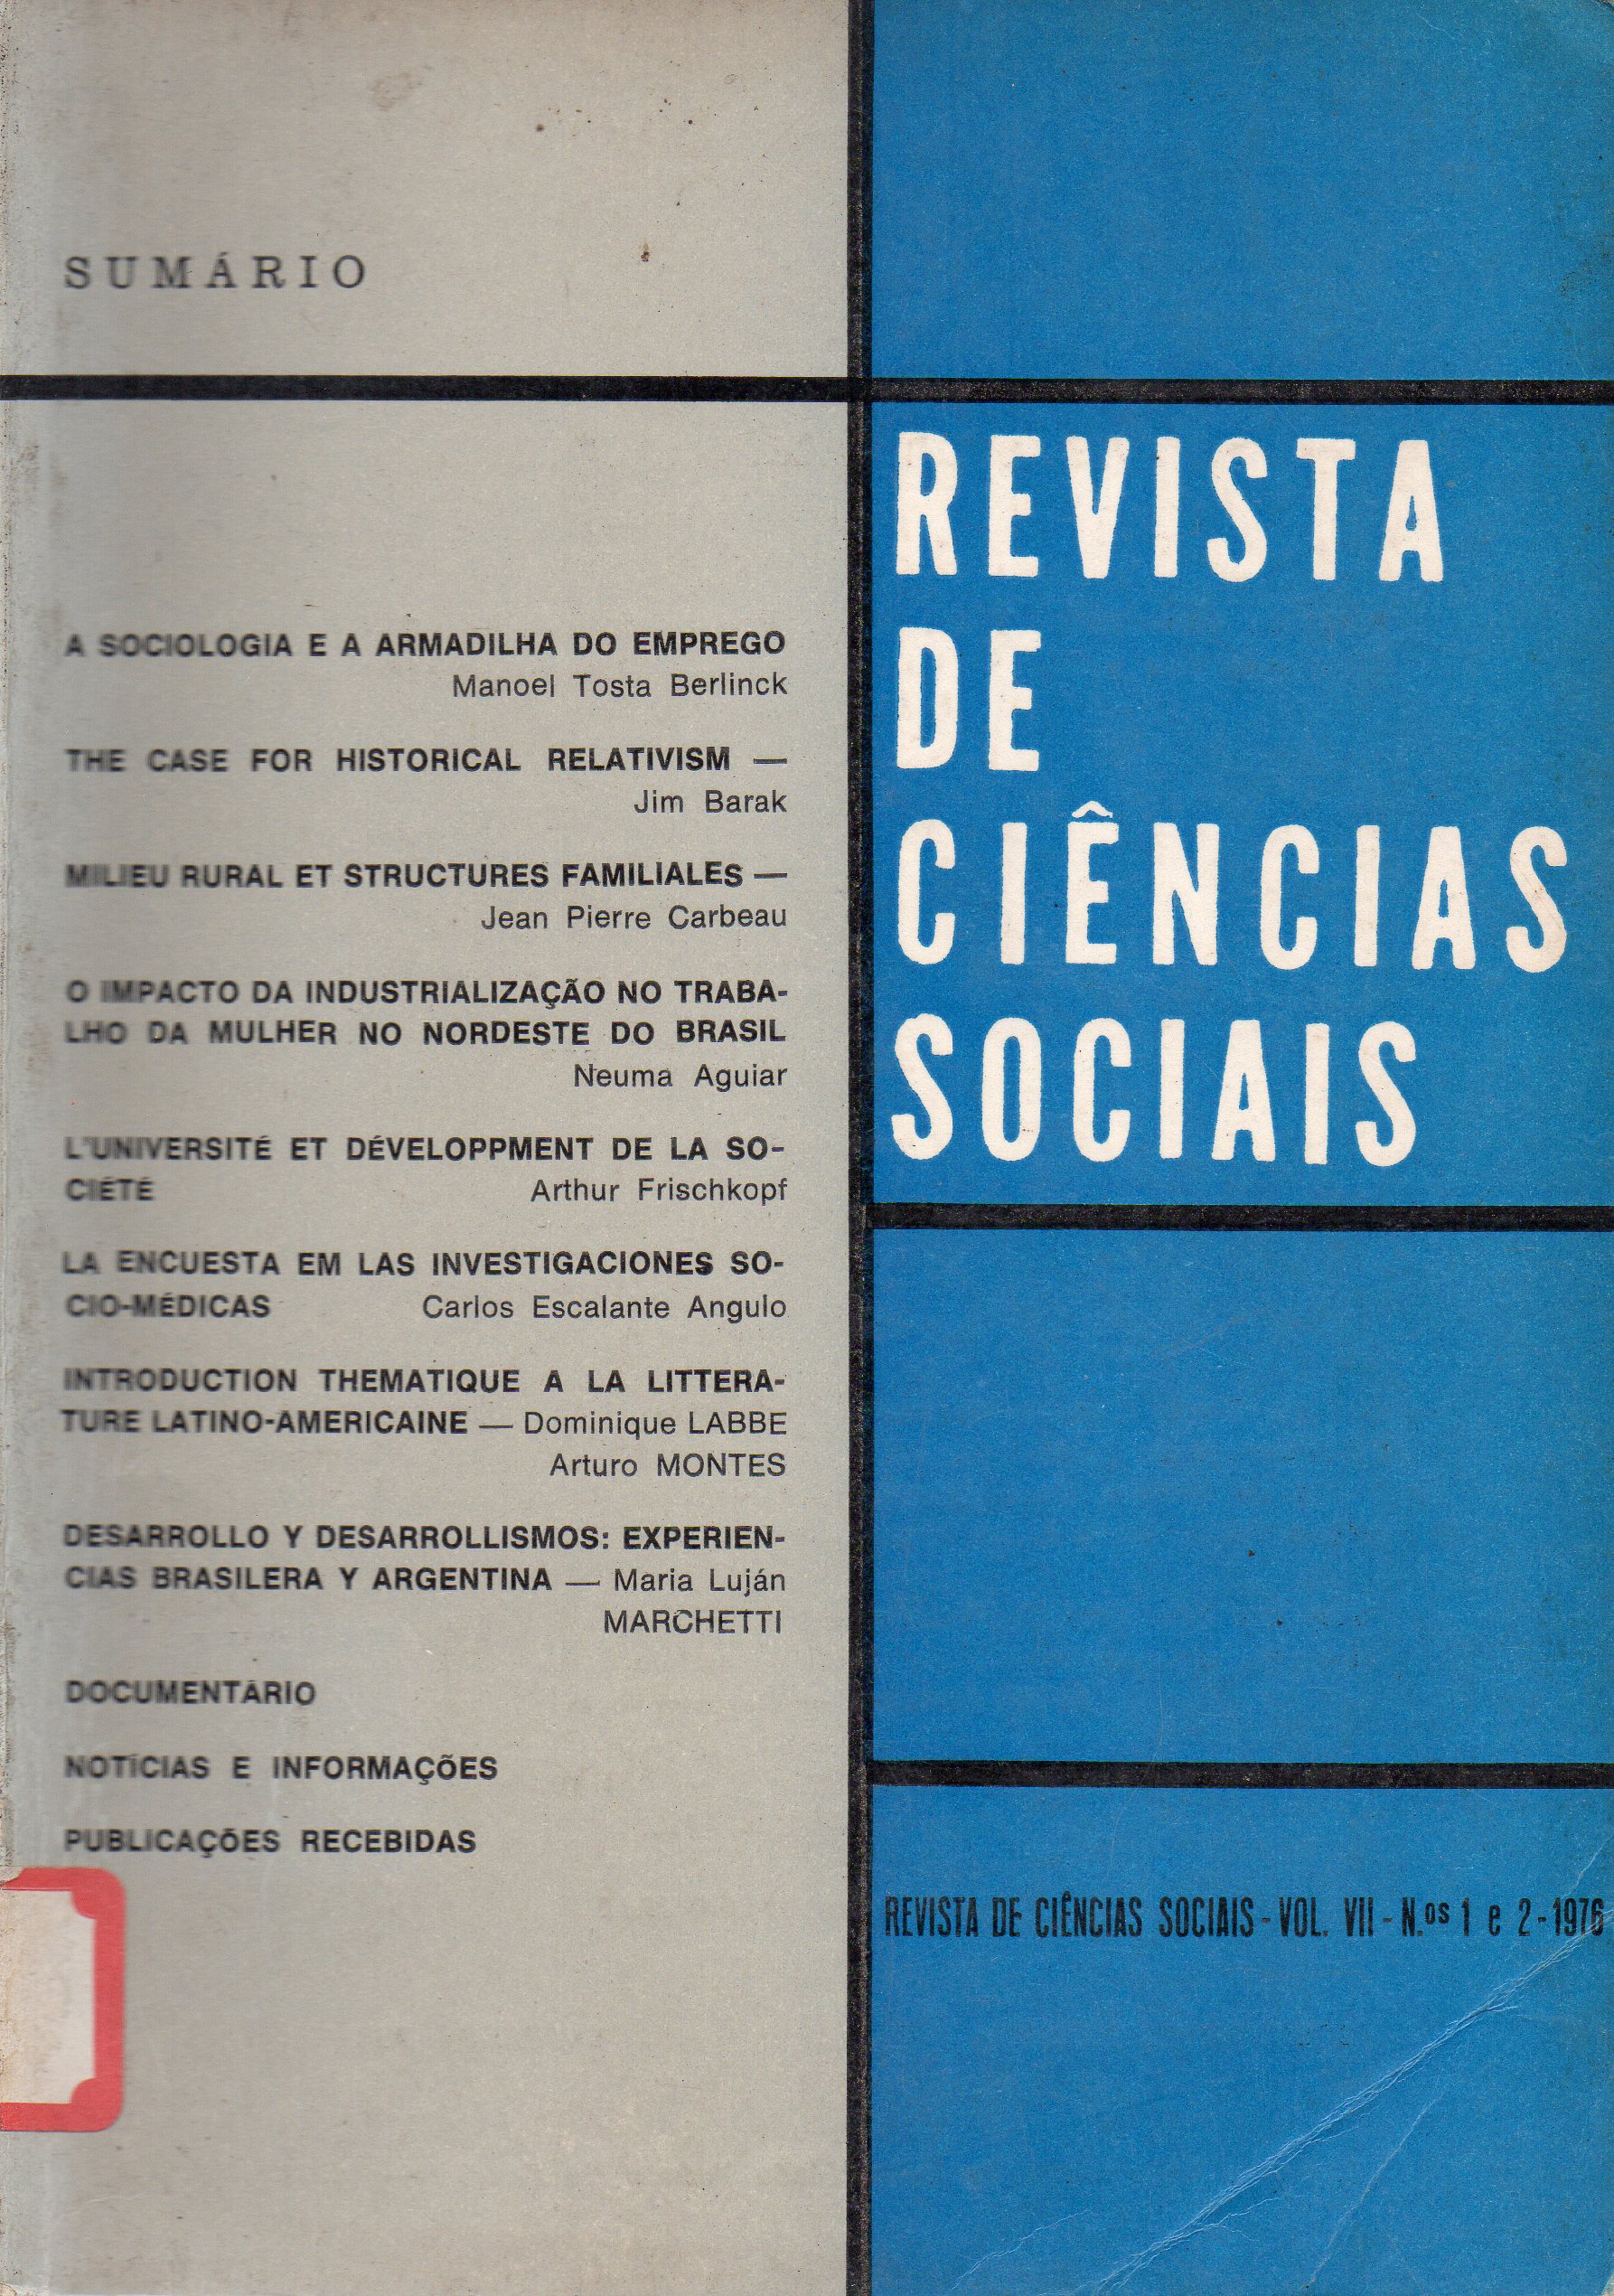 					View Vol. 7 No. 1 e 2 (1976): Revista de Ciências Sociais
				